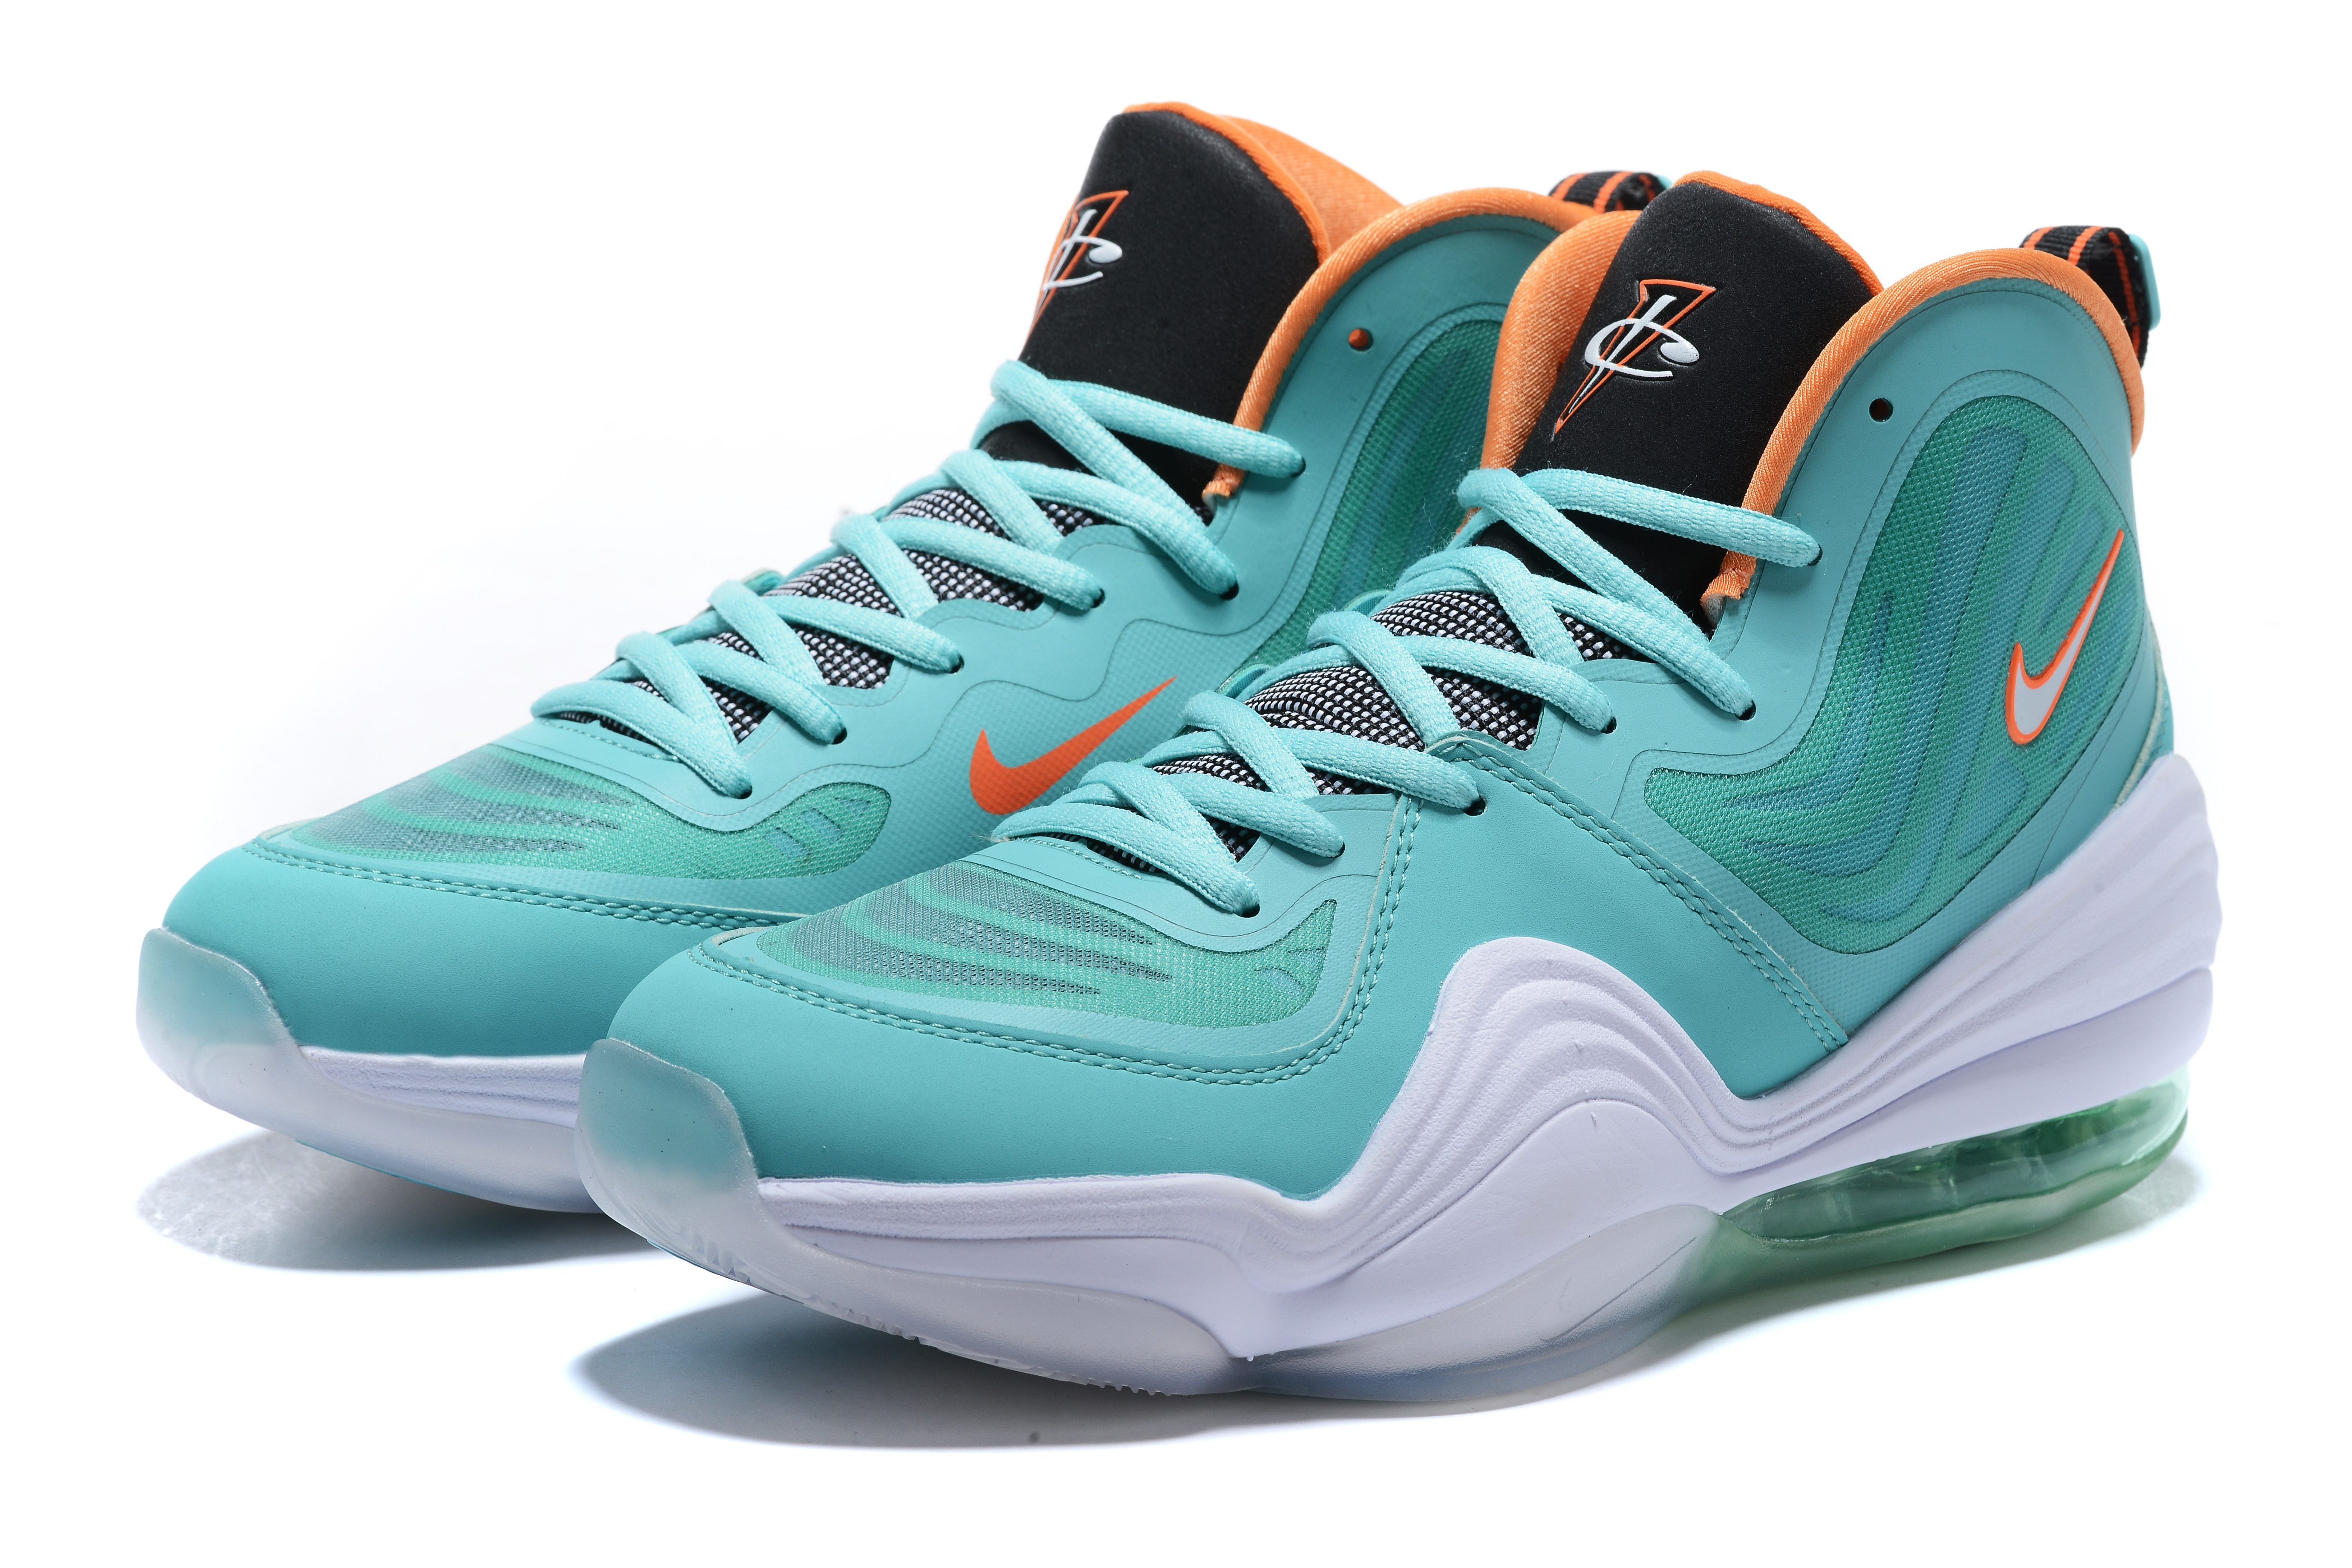 2020 Nike Penny Hardaway V Jade Blue White Orange Basketball Shoes